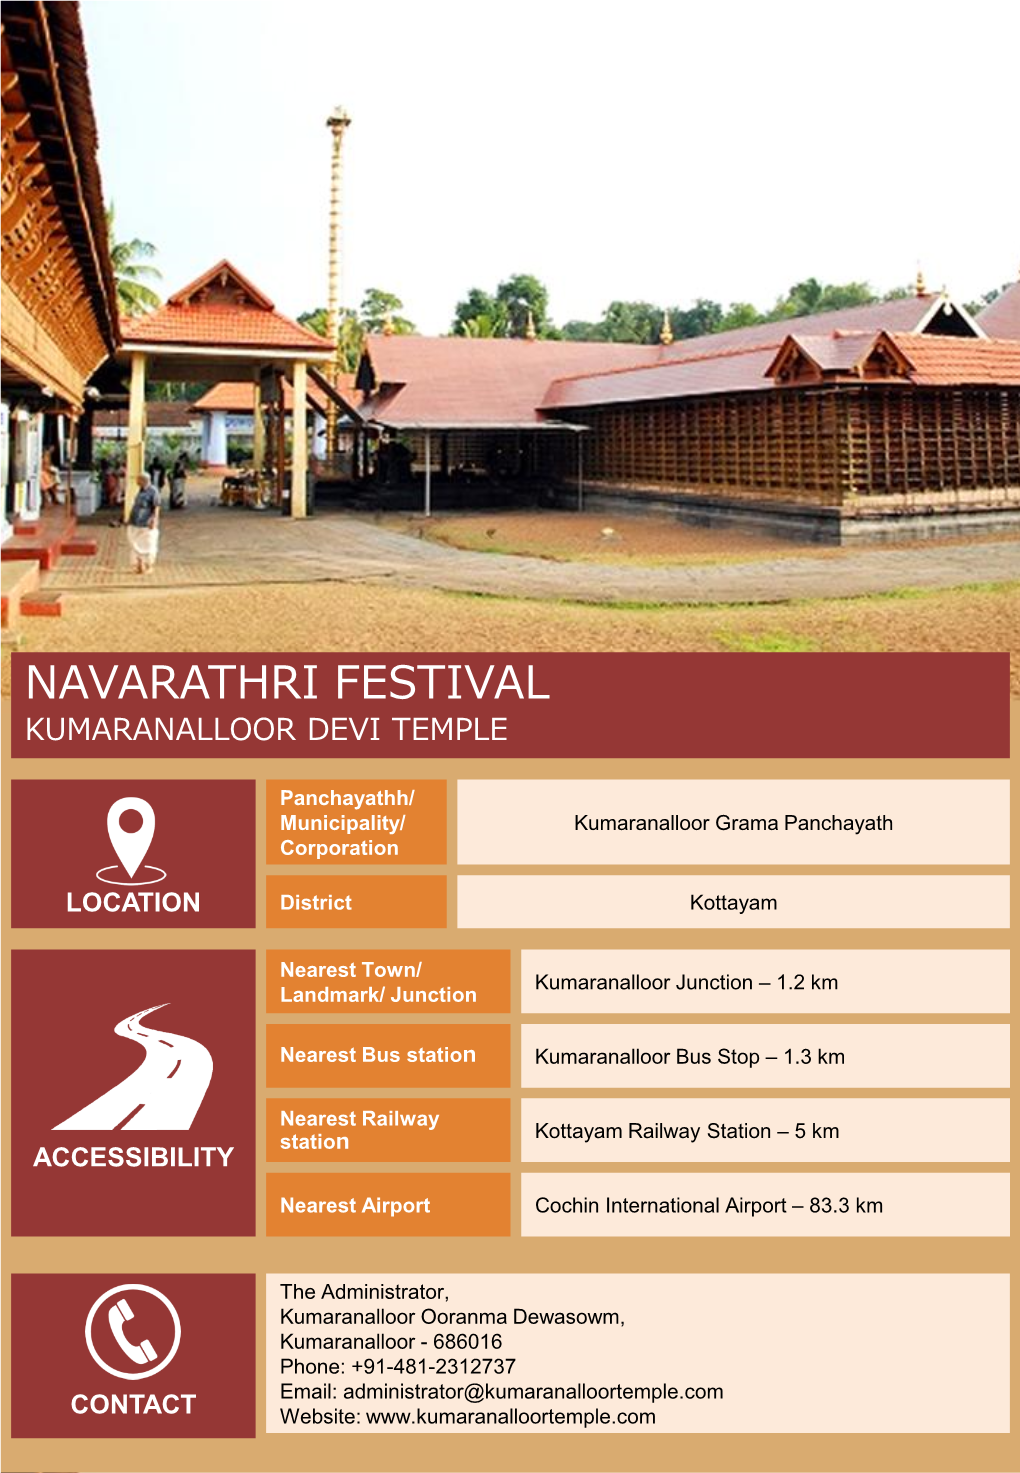 Navarathri Festival Kumaranalloor Devi Temple